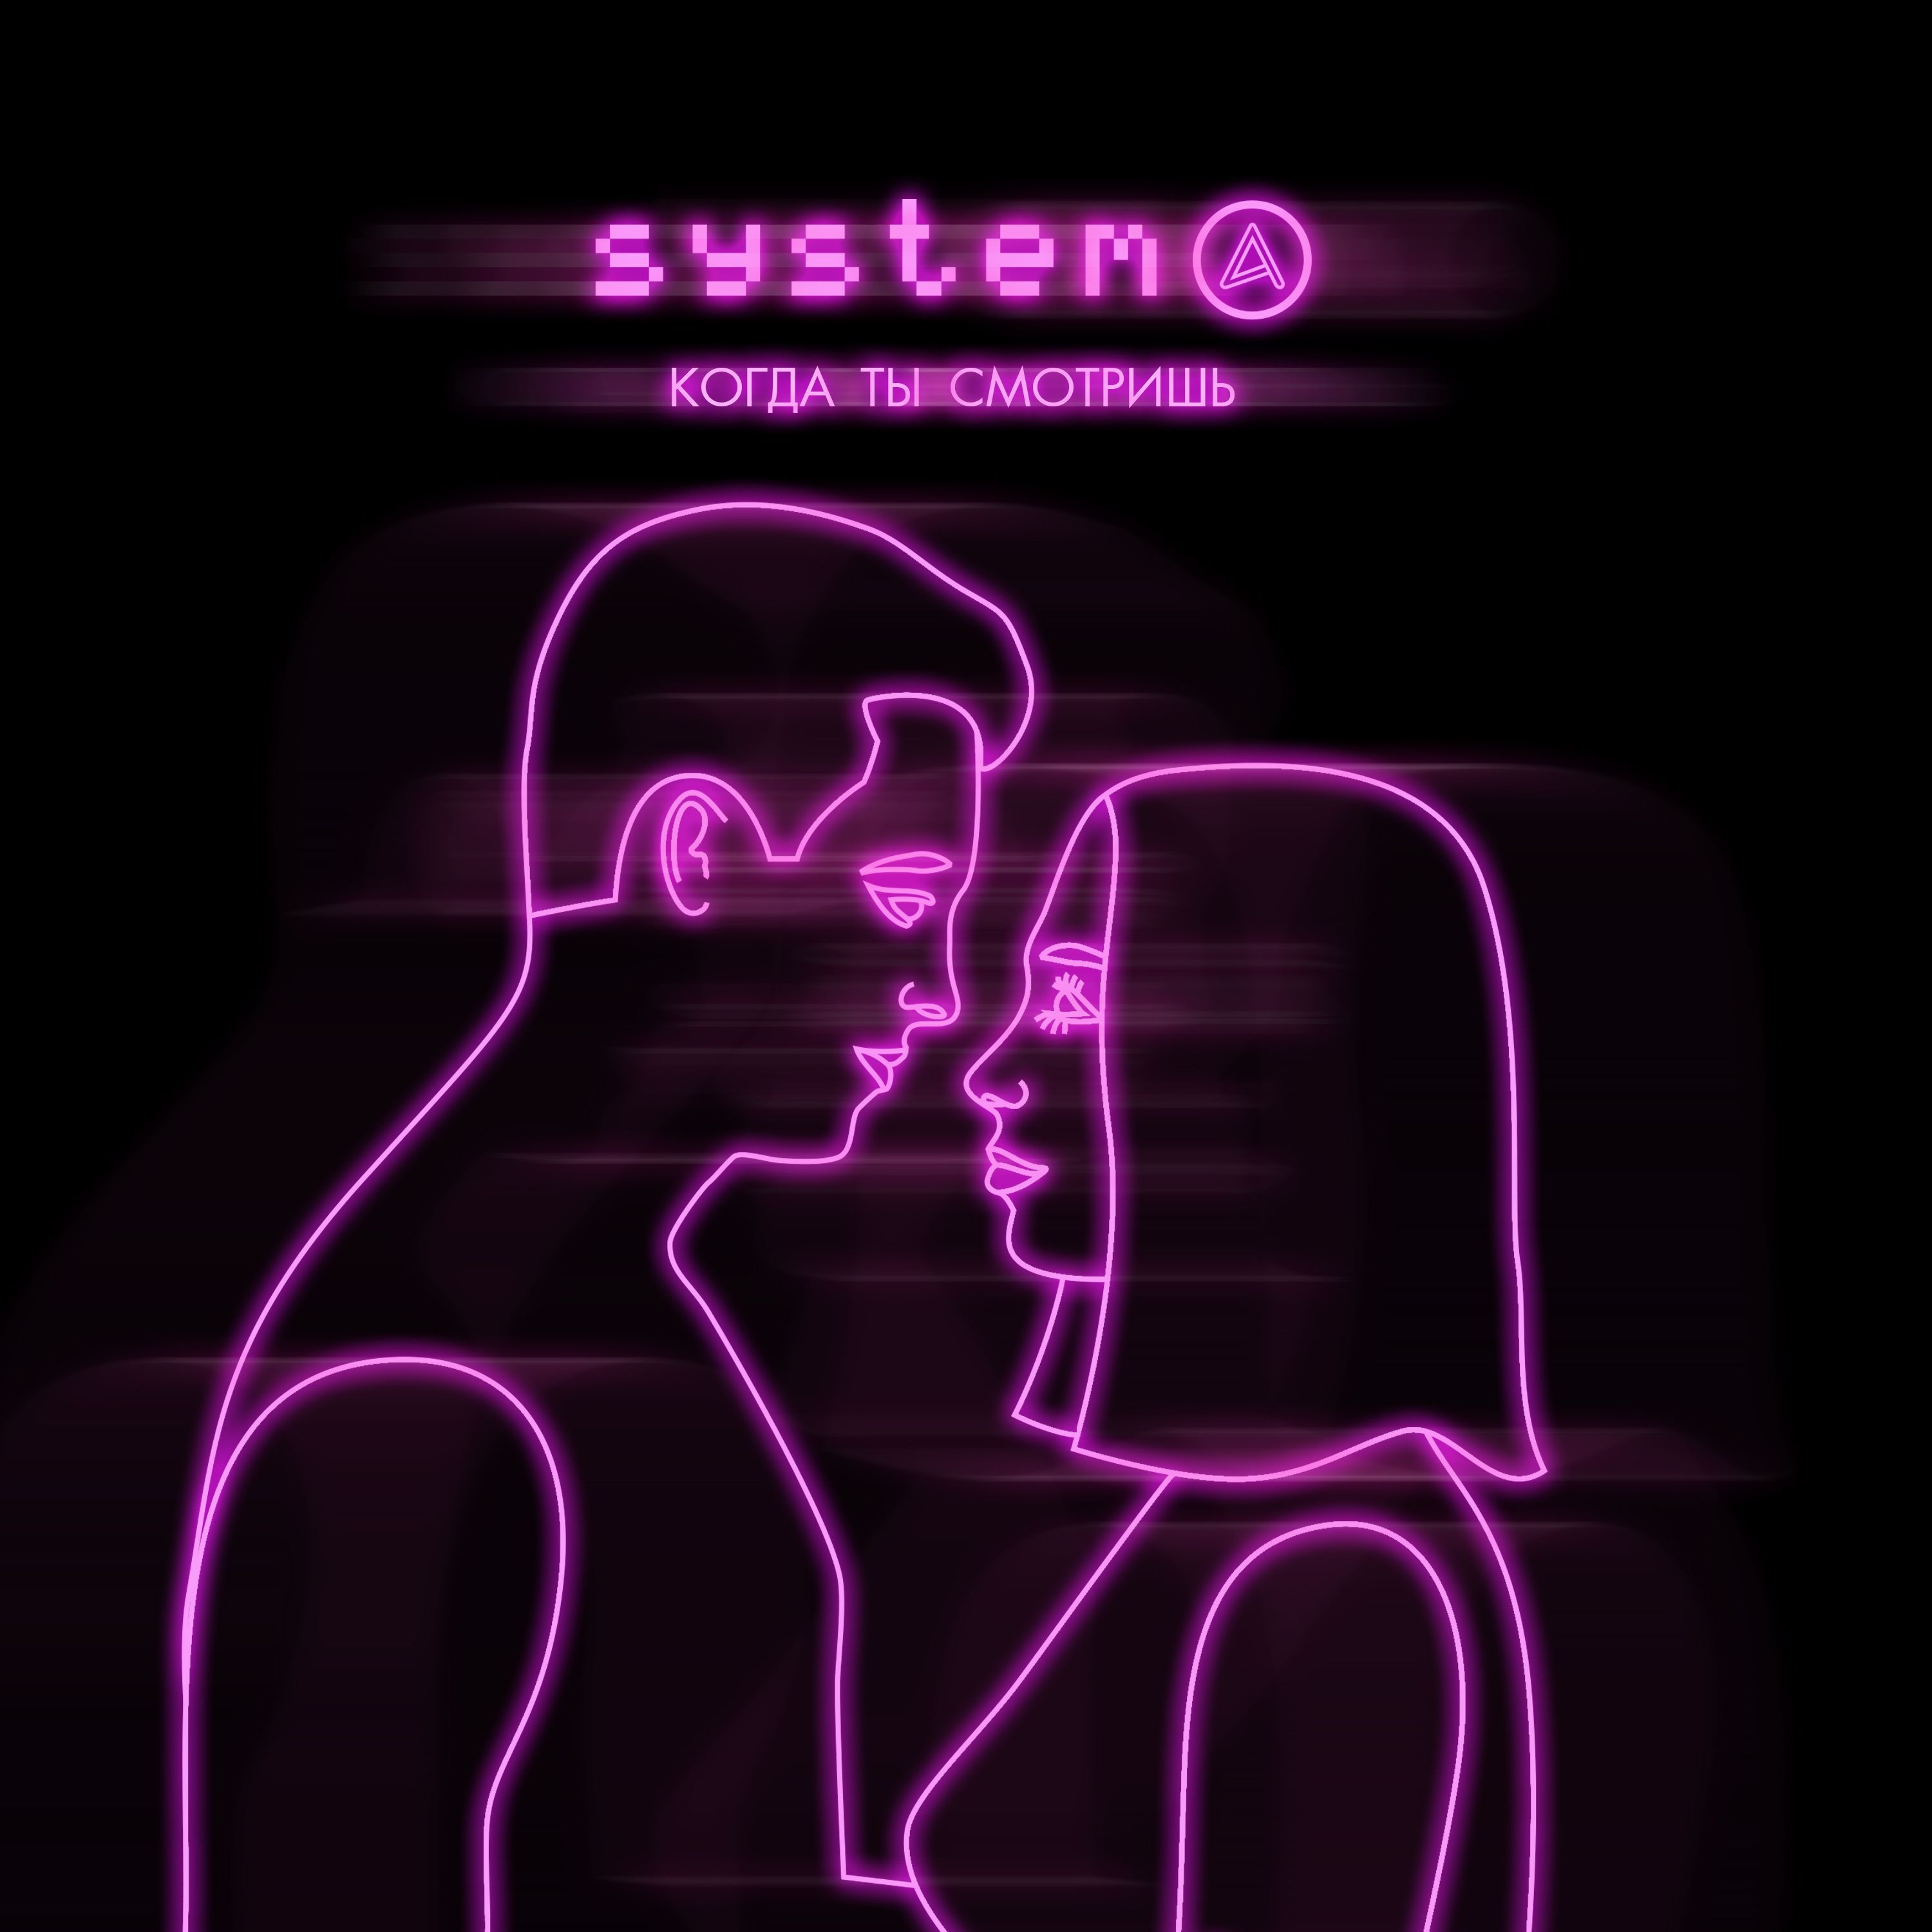 I-download Systema - Когда ты смотришь